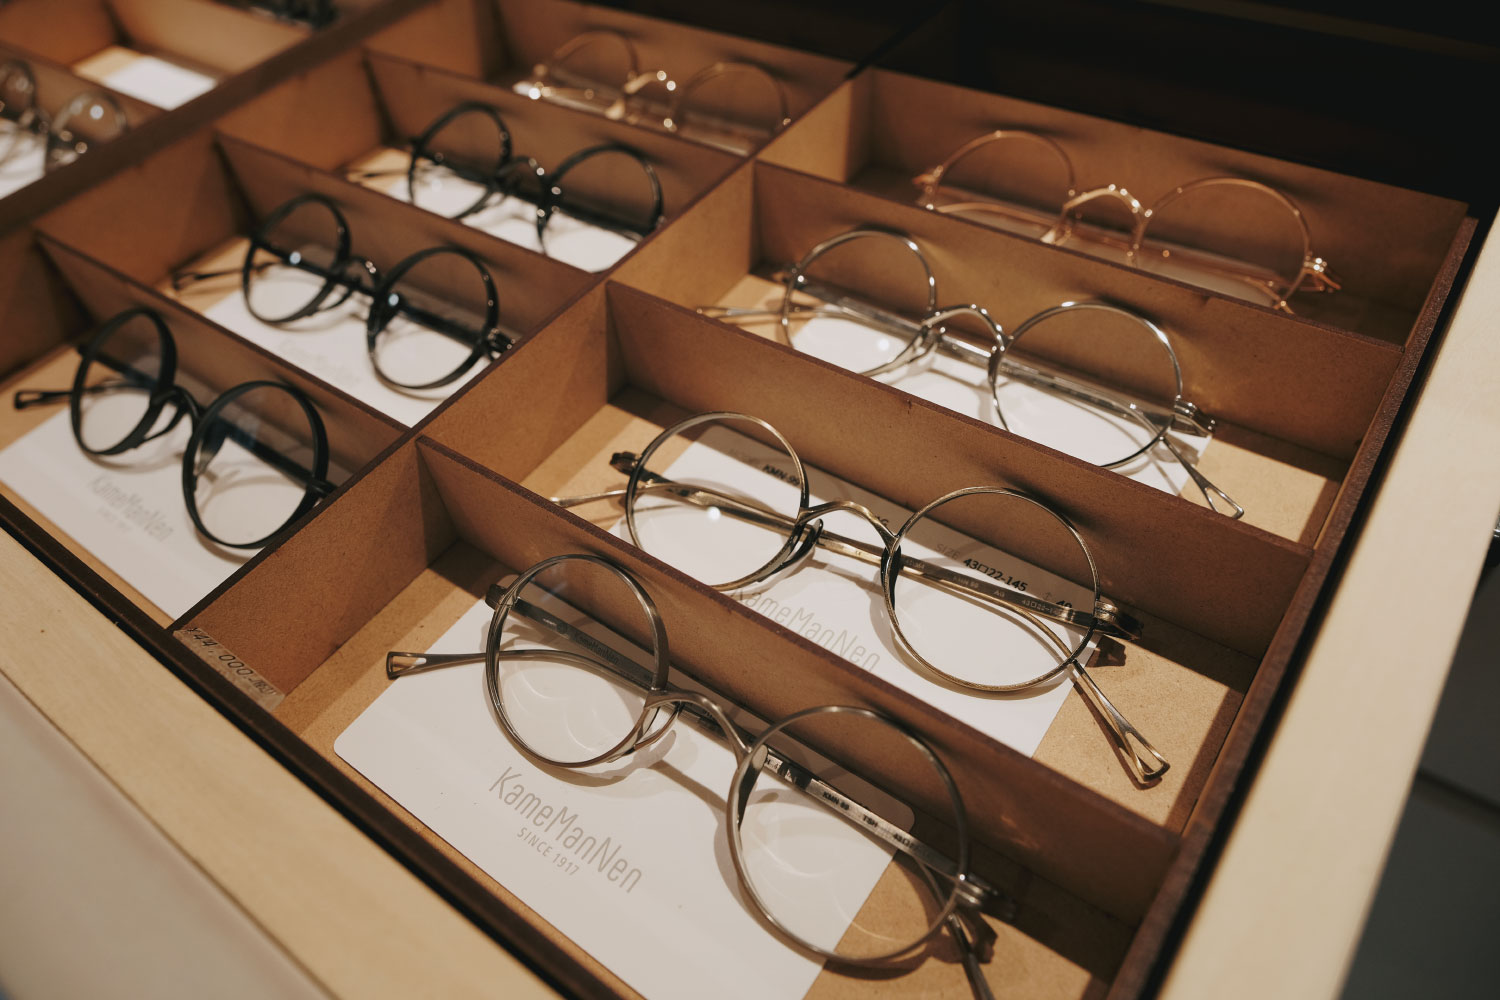 シンプルかつ完成度の高いオリジナル商品の数々。ことに丸メガネの評価が高い。